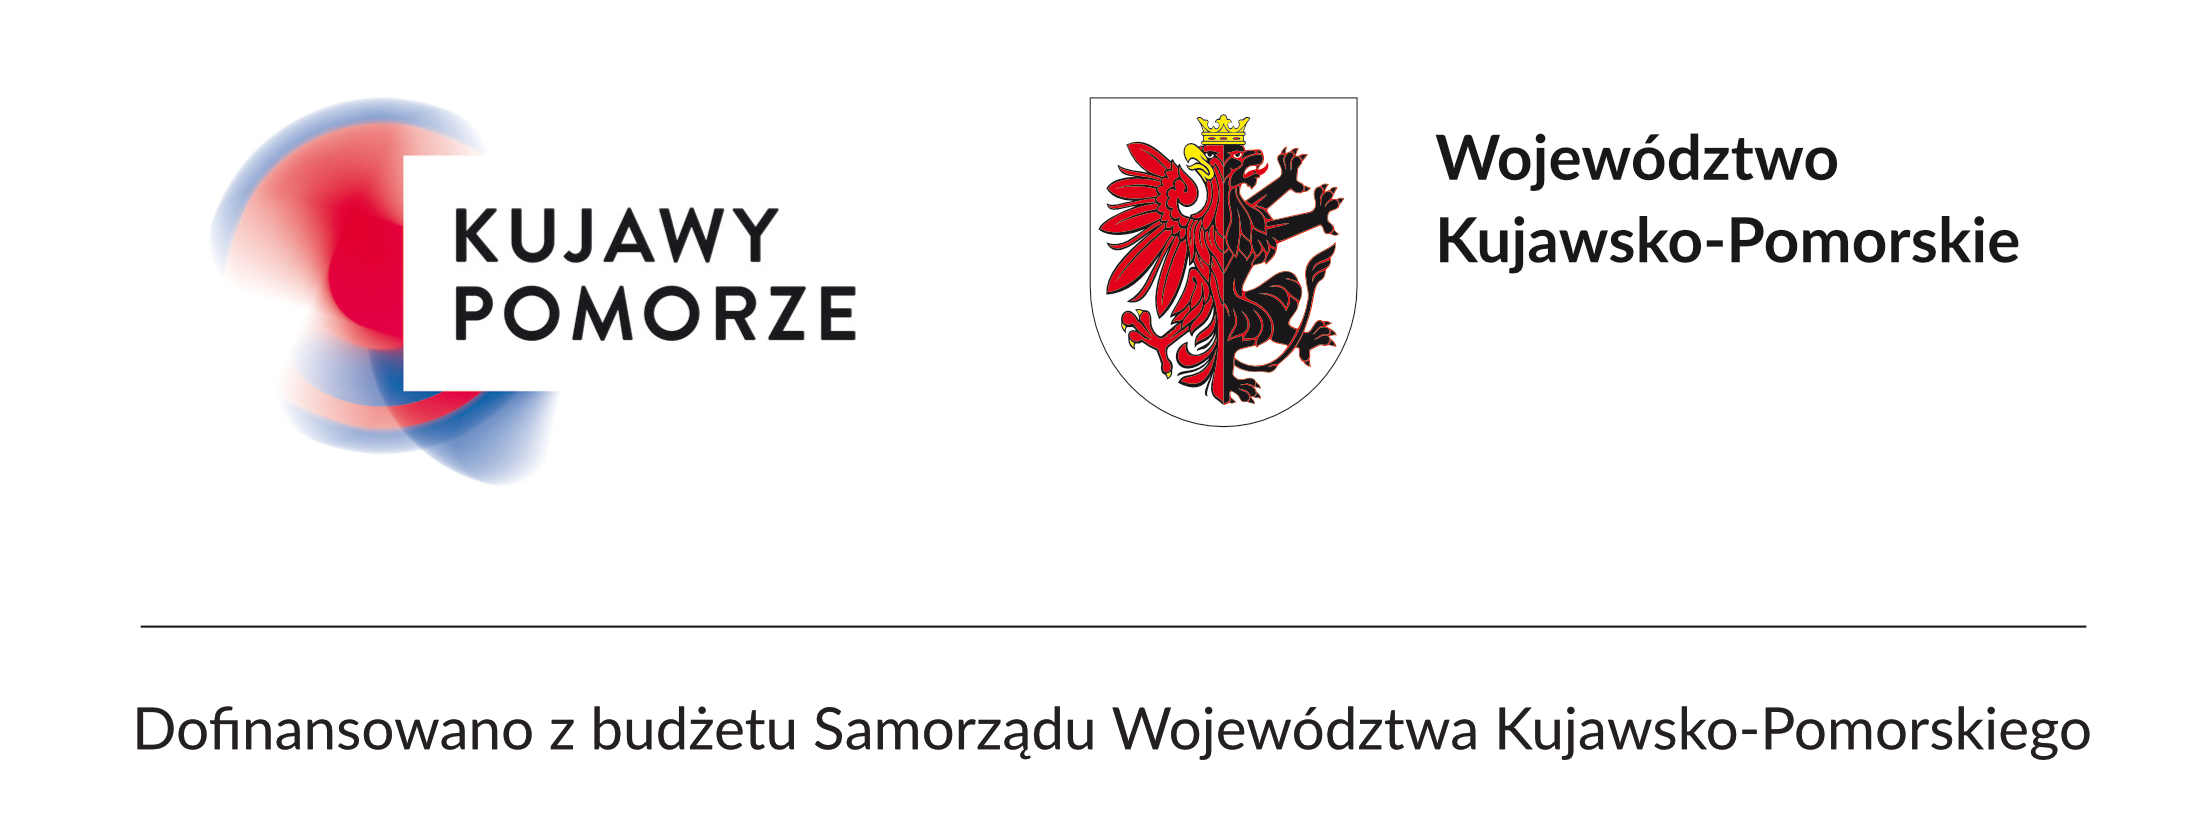 belka dofinansowano logo poziom Województwo kp podpis pod spodem K